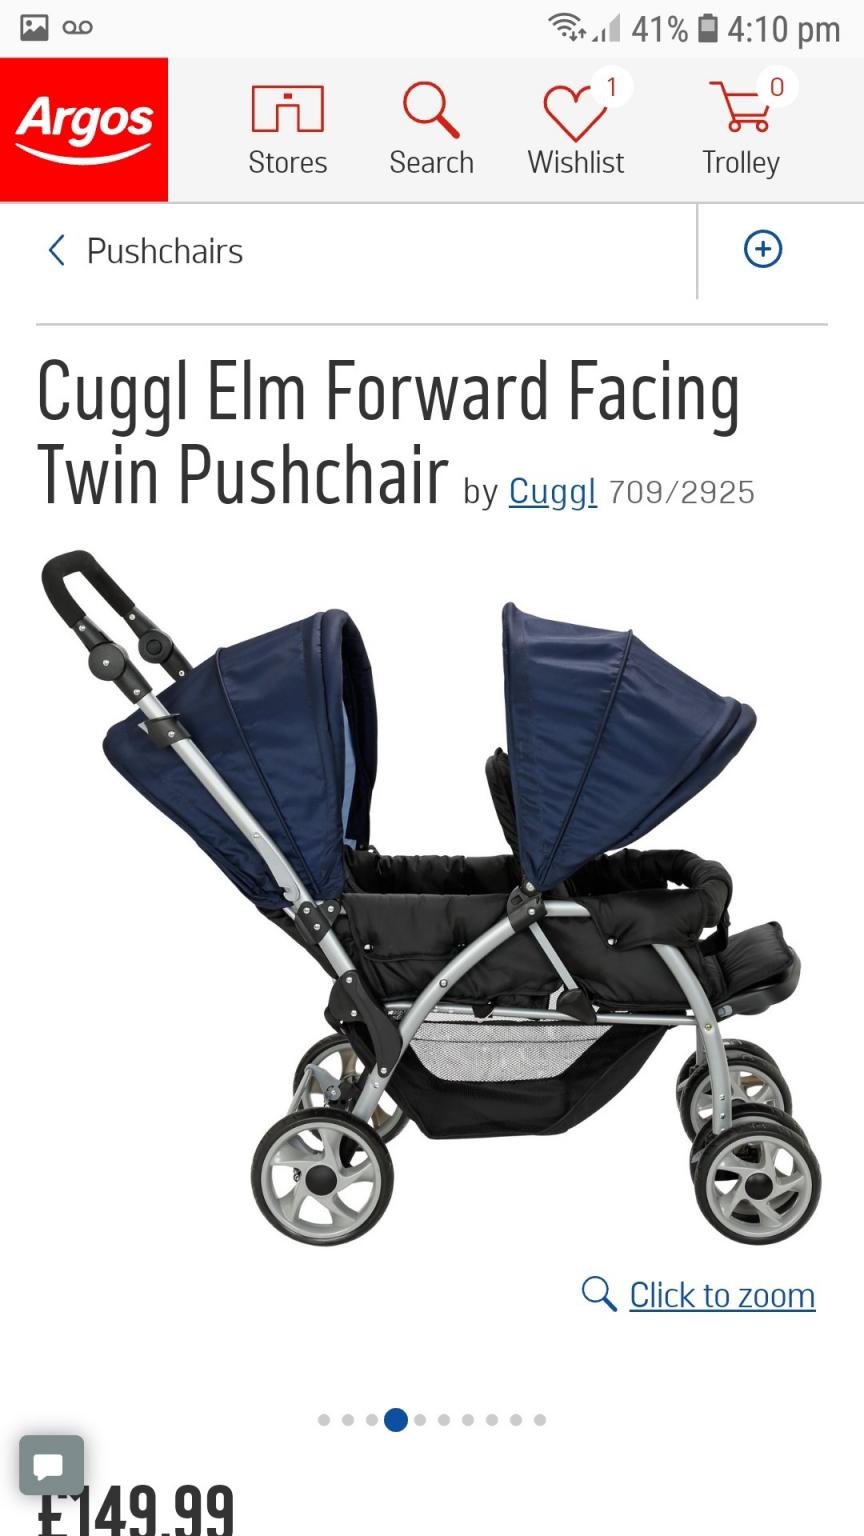 cuggl elm twin pushchair